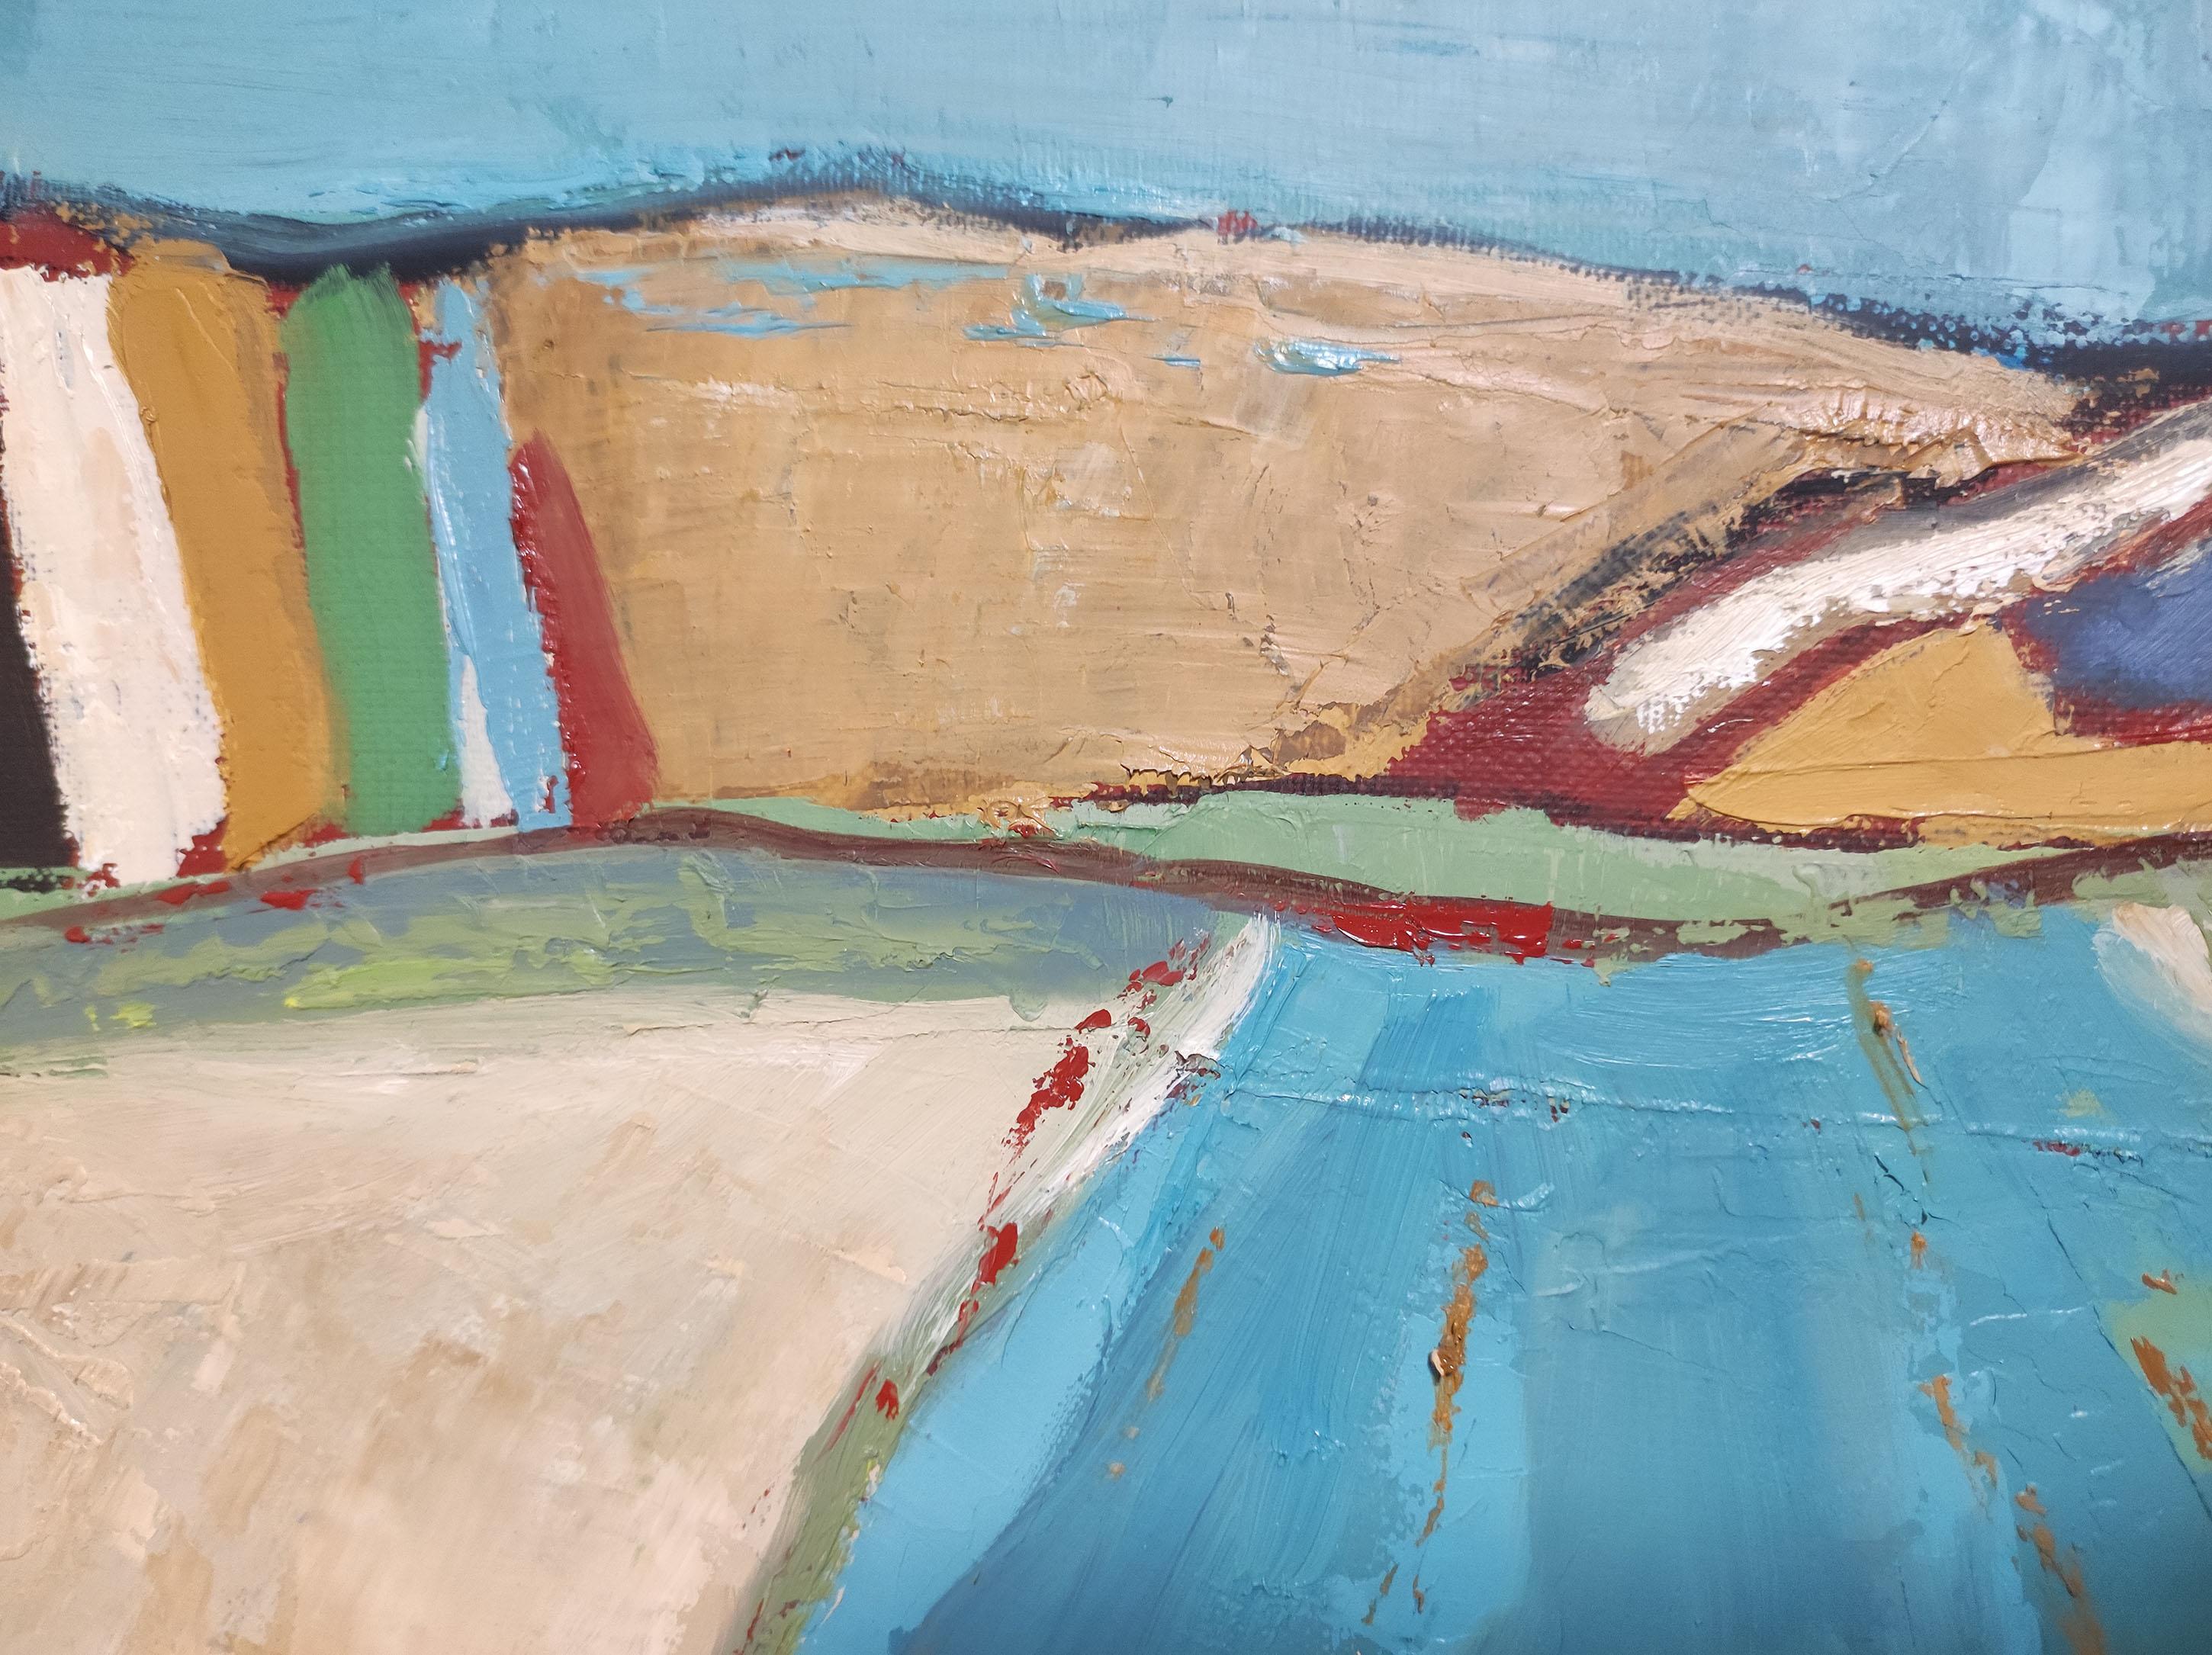 Les paysages abstraits de Sophie Dumont : Capturer l'essence des champs de Normandie

Dans le domaine de l'art contemporain, Sophie Dumont s'impose comme un maître de l'abstraction, tissant sans peine l'essence de la nature dans ses toiles. Ses